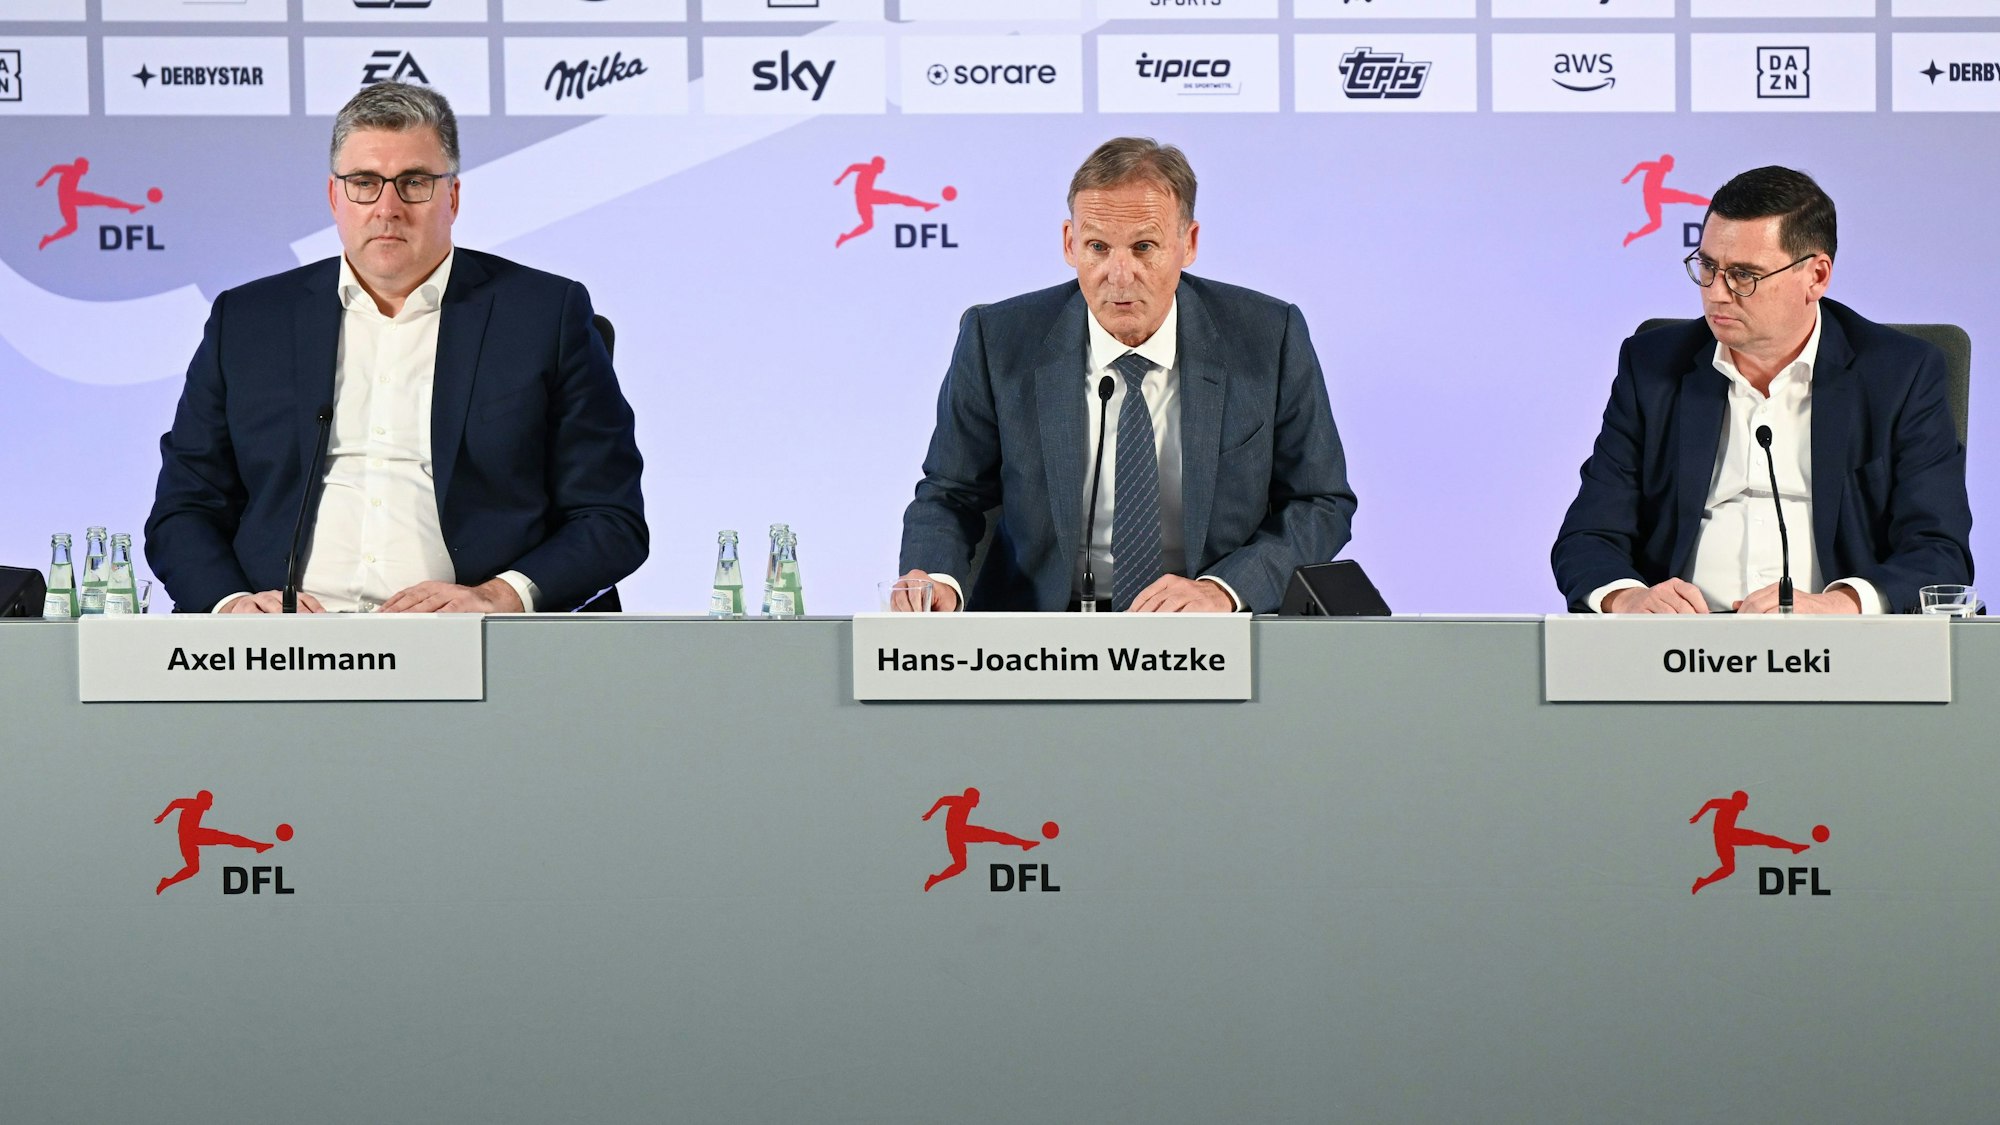 Axel Hellmann (l-r), Vorstandssprecher Eintracht Frankfurt  und einer der beiden Geschäftsführer der DFL GmbH, Hans-Joachim Watzke, Geschäftsführer von Borussia Dortmund und DFL-Aufsichtsratsvorsitzender, und Oliver Leki, Finanzvorstand vom SC Freiburg und einer der beiden Geschäftsführer der DFL GmbH